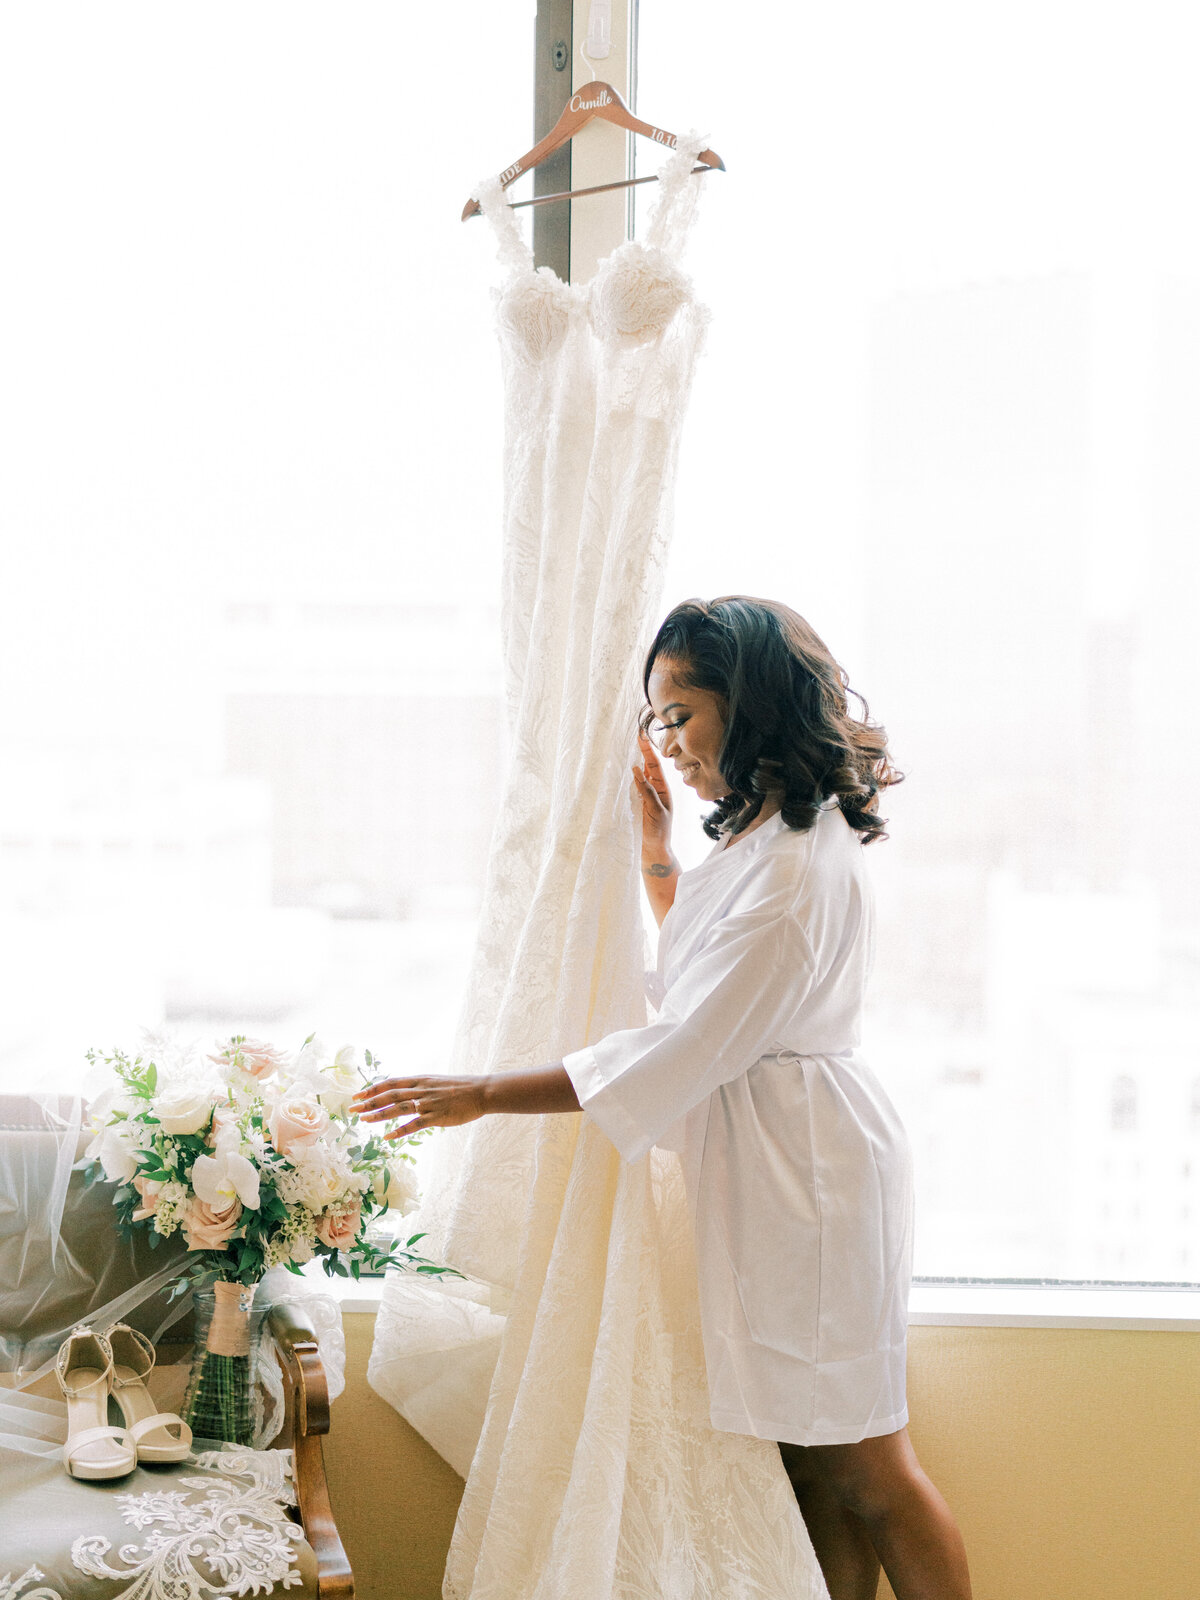 Chicago Film Wedding Photographer | Amarachi Ikeji Photography 30